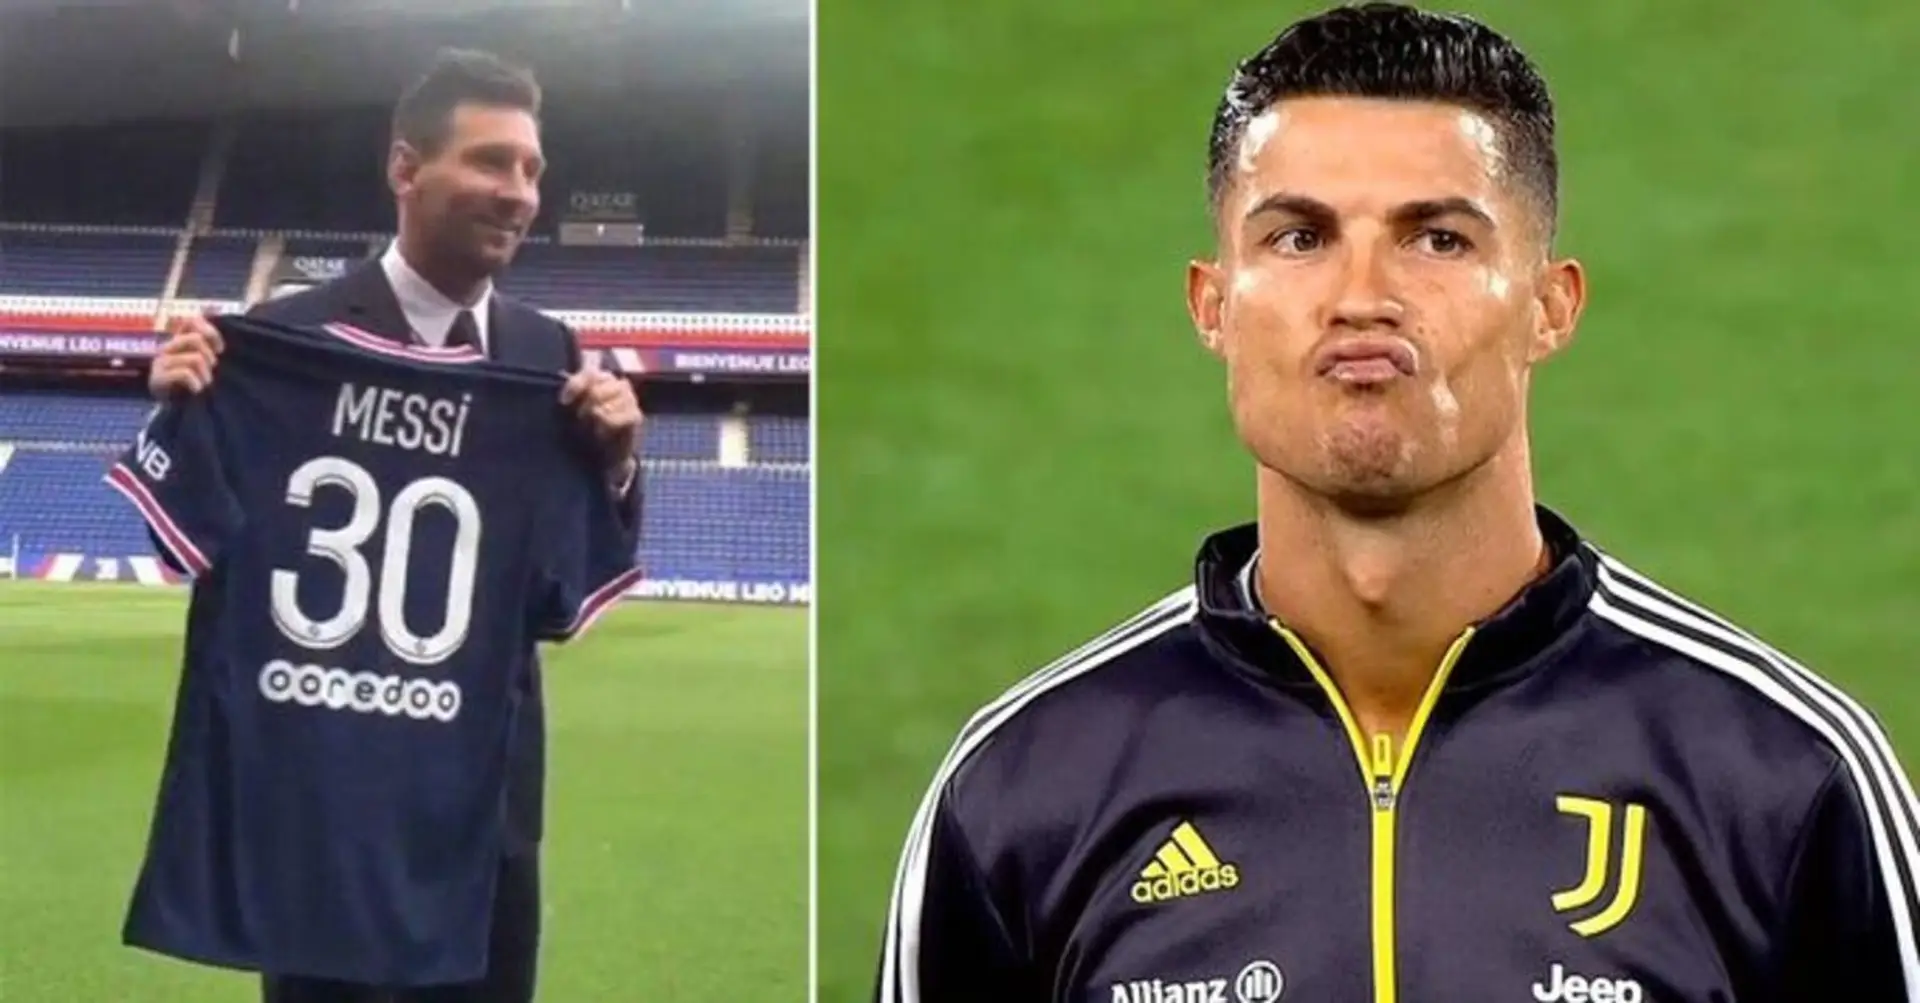 El jugador de la Ligue 1 pide a Cristiano que se una al Lille para competir con Messi. Ronaldo responde 'Ja ja ja'